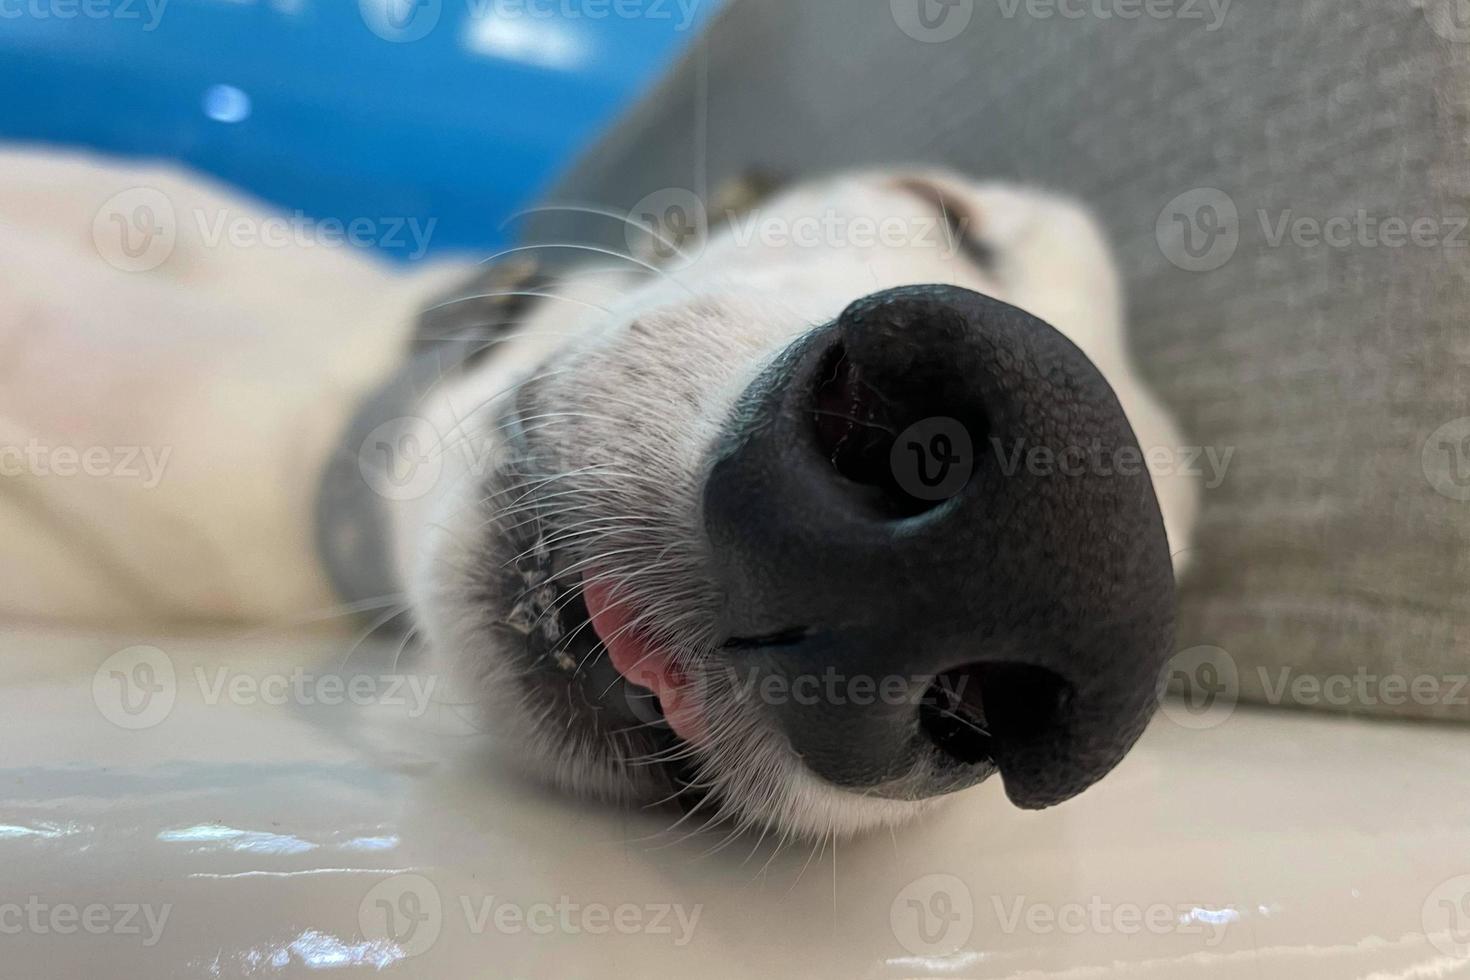 windhond hond neus- boem. dichtbij omhoog van een windhond hond neus, schattig hond foto. huisdier zorg dier leven quarantaine concept foto